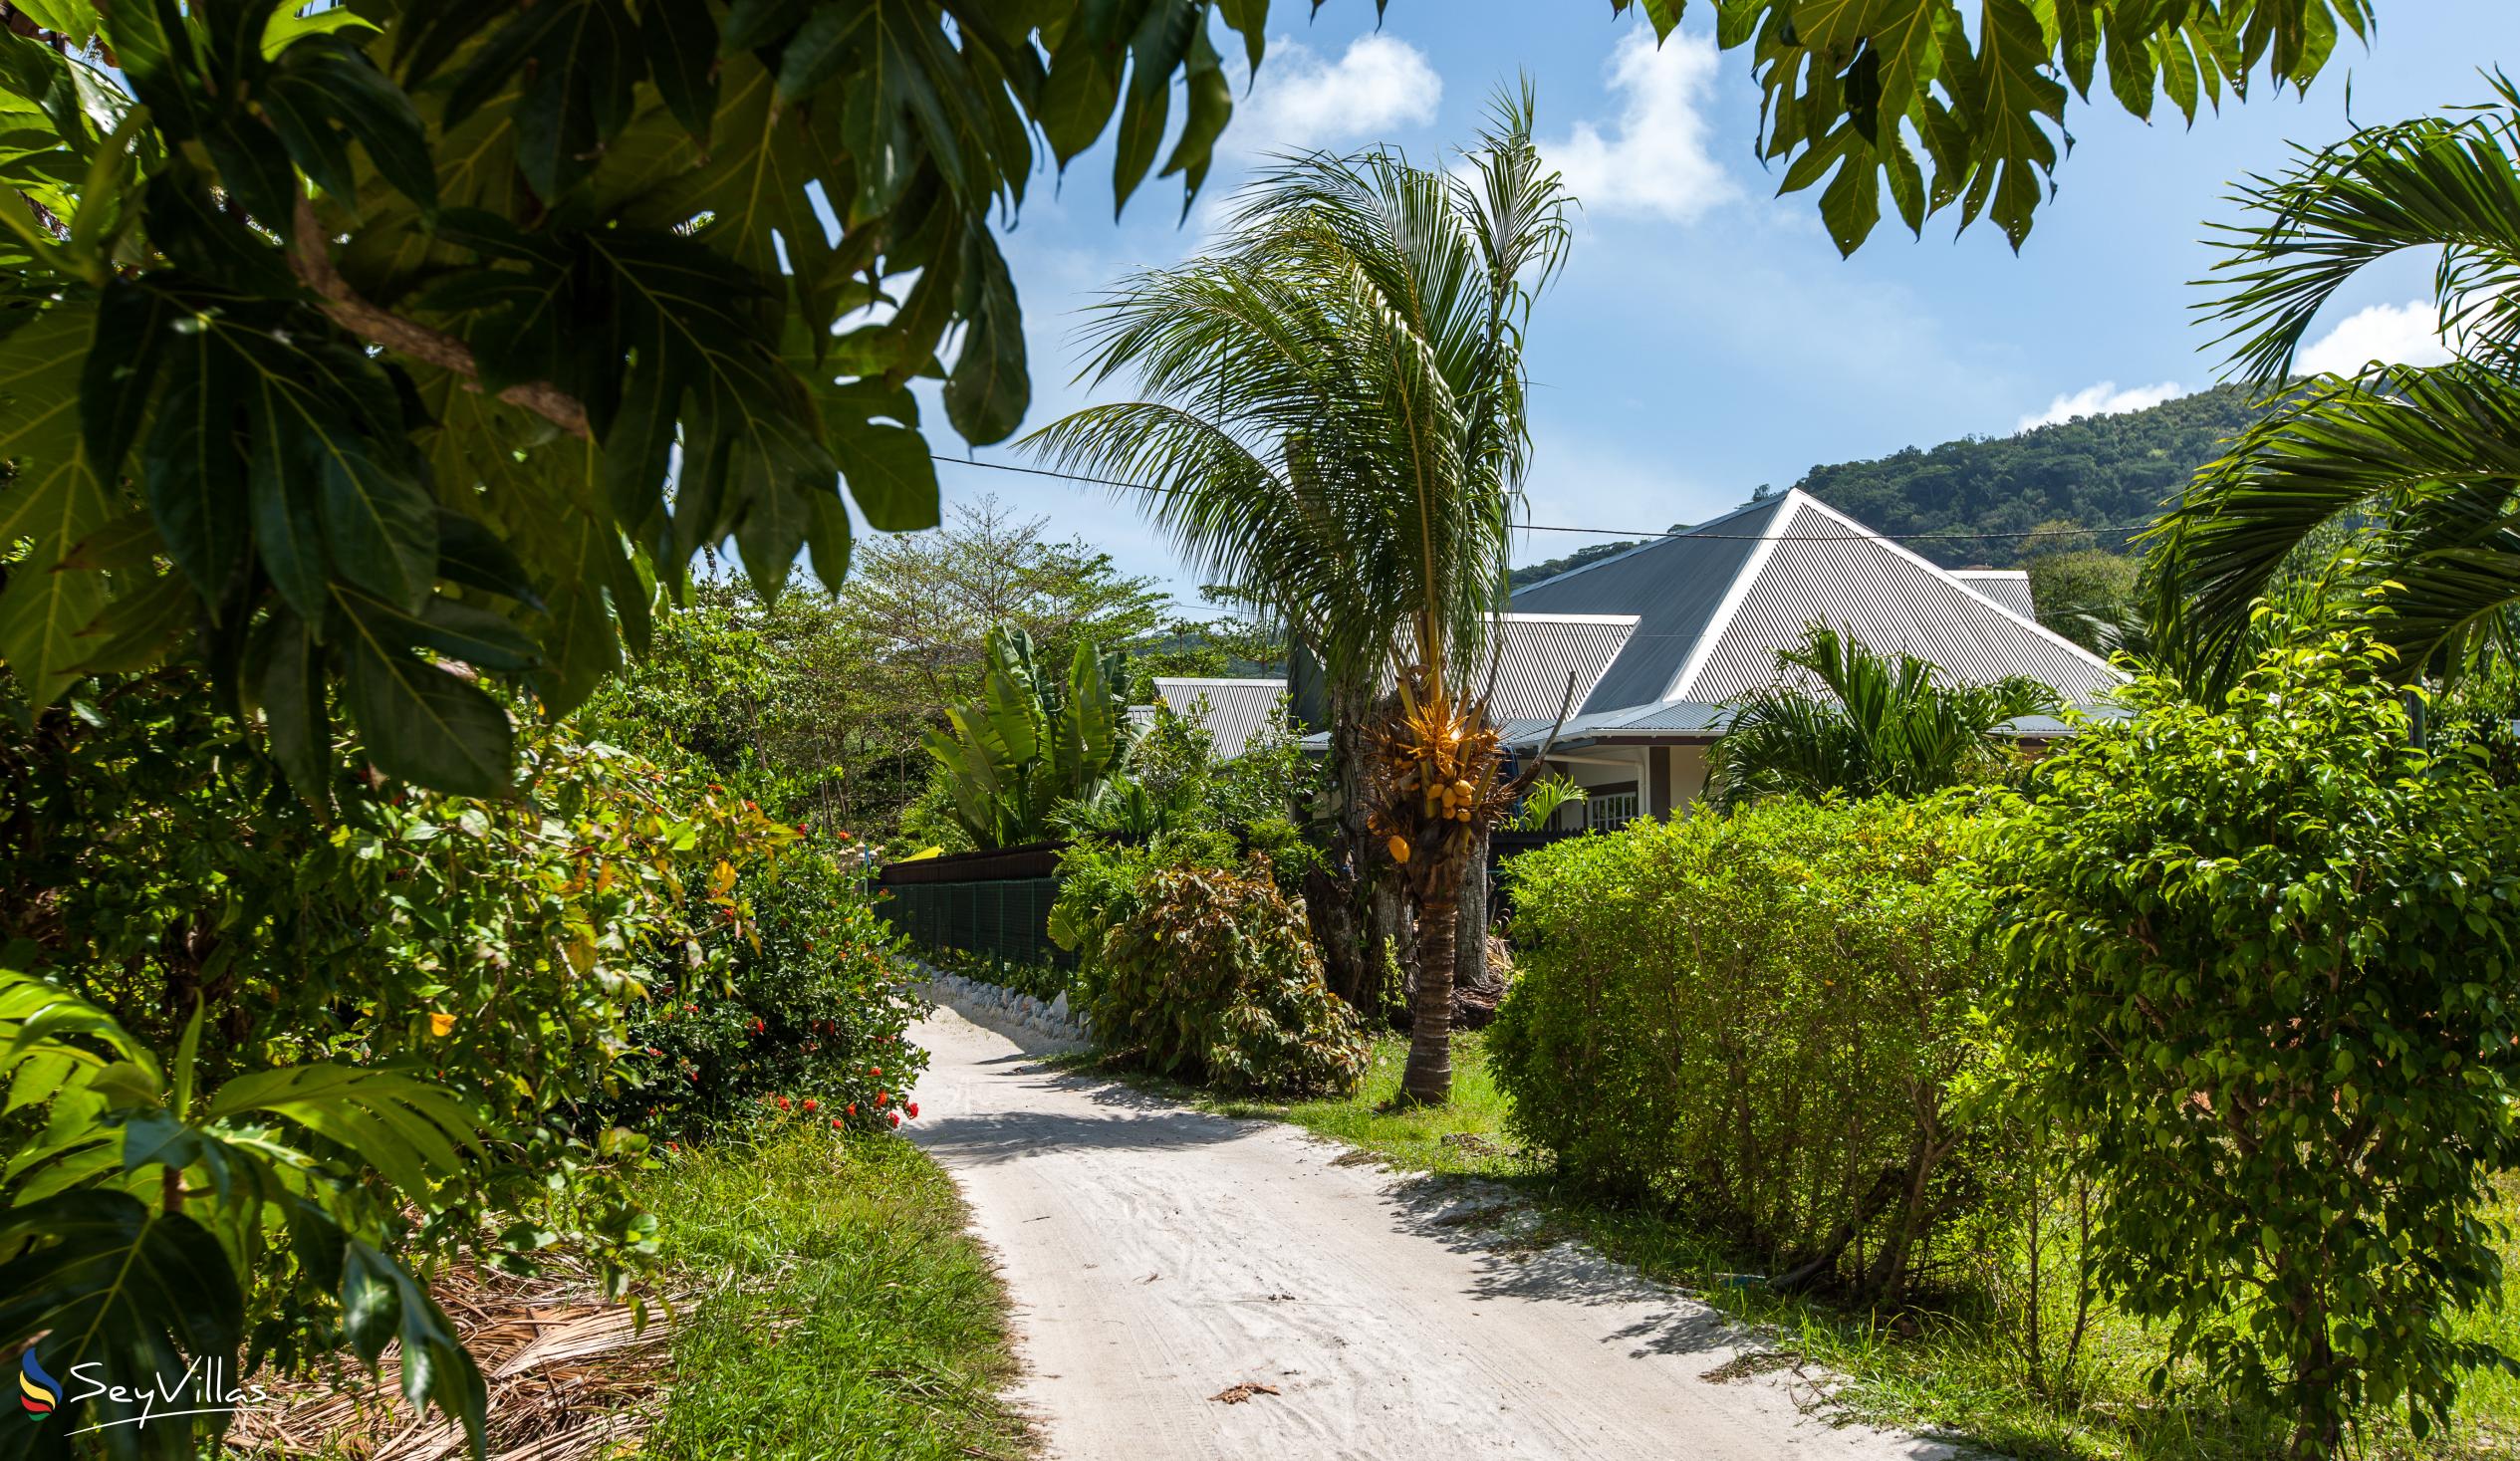 Foto 22: Maison Charme De L'ile - Aussenbereich - La Digue (Seychellen)